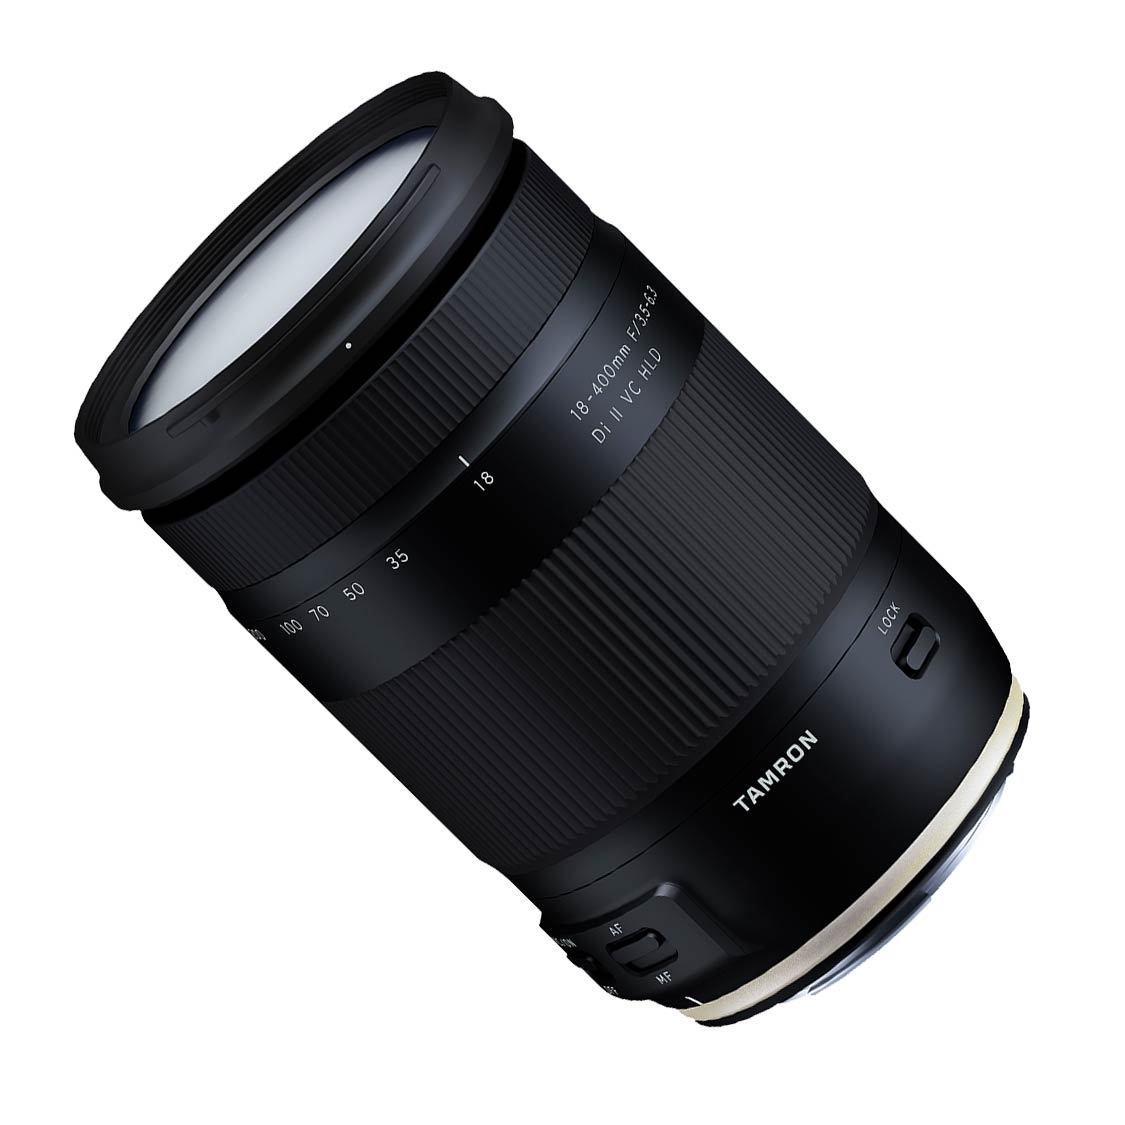 Tamron AF 18-400mm F3.5-6.3 VC HLD DI II Lens for Nikon F-Mount